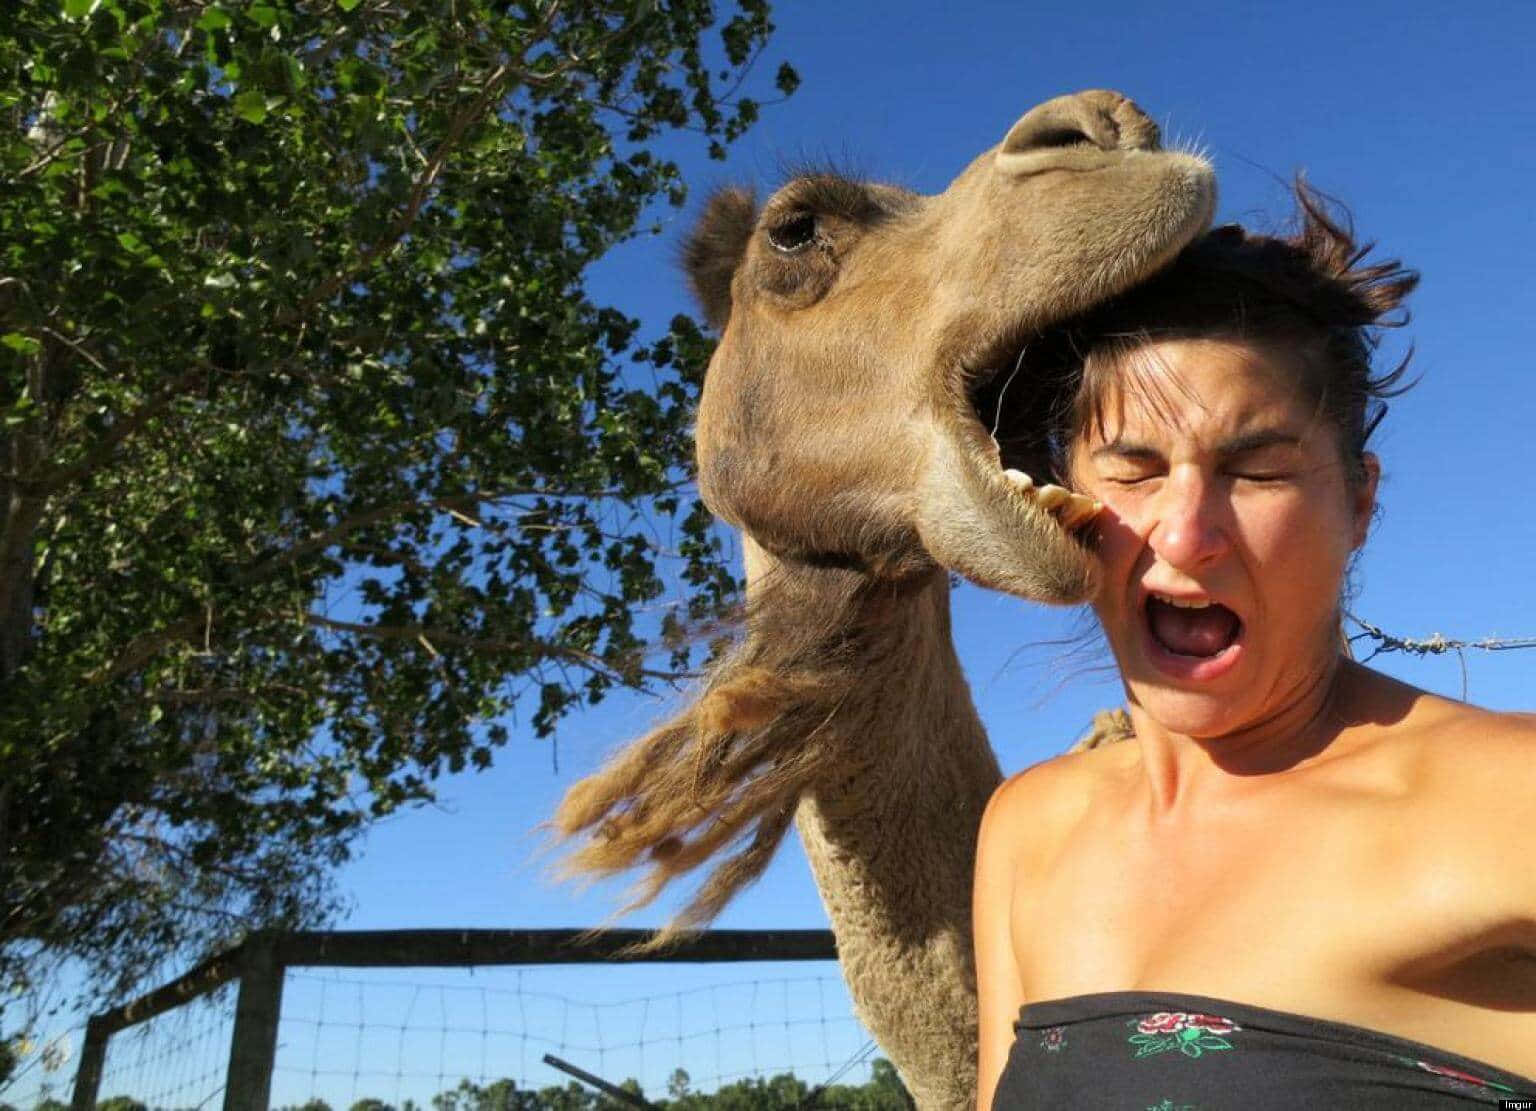 Enkvinna Poserar Med En Kamel